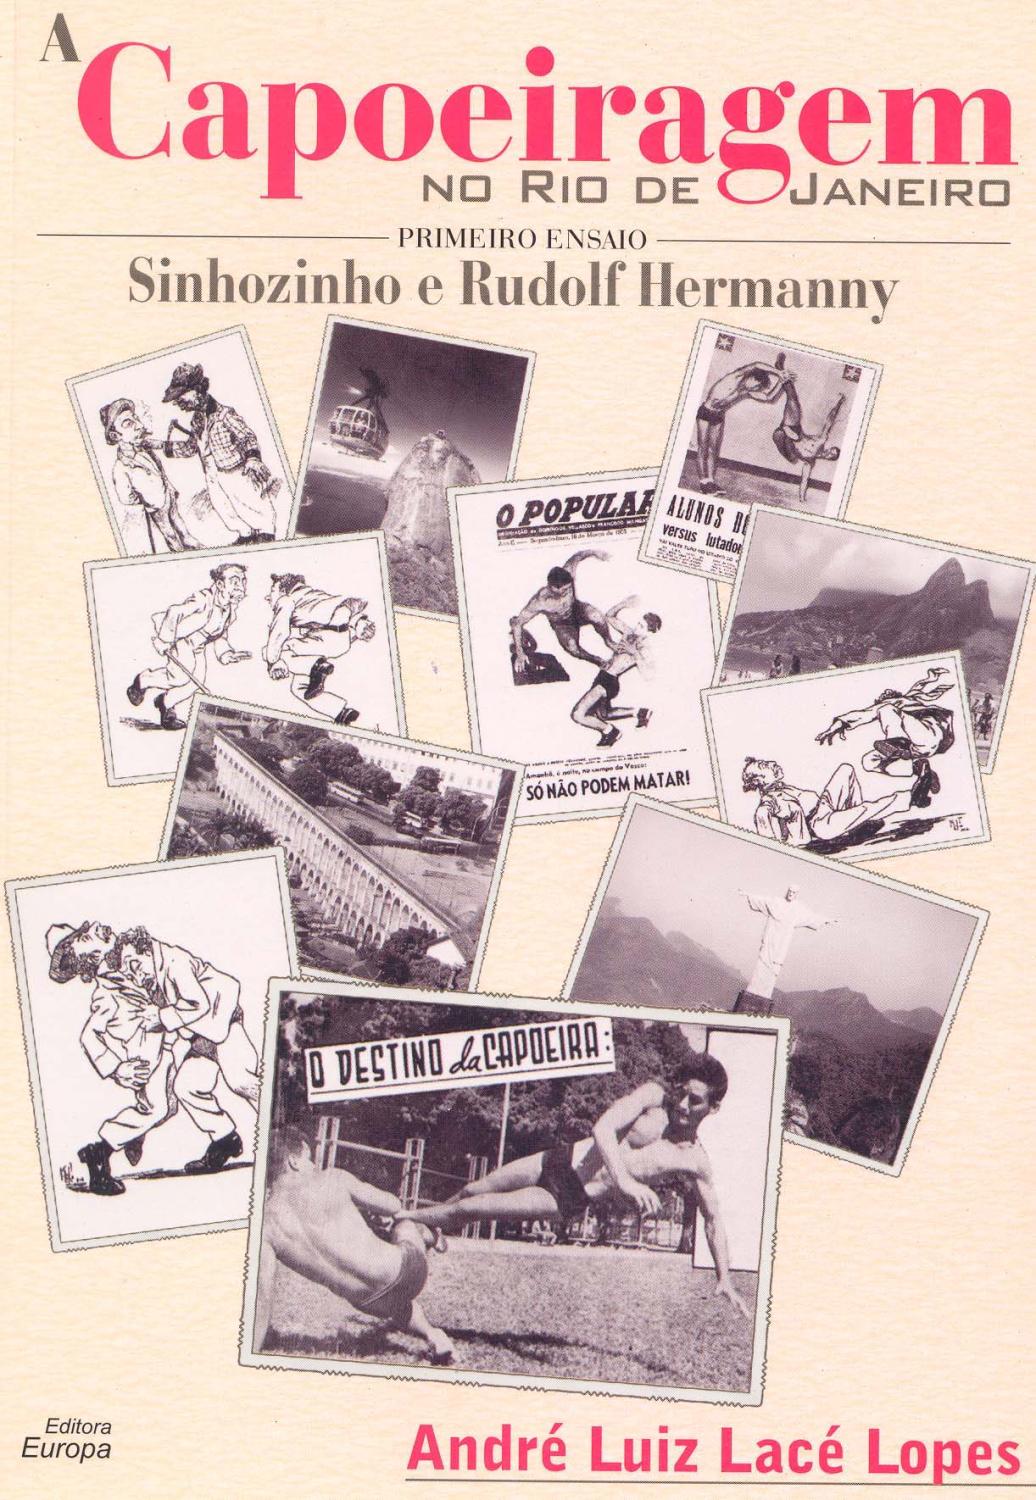 A capoeiragem no Rio de Janeiro, primeiro ensaio : Sinhozinho e Rudolf Hermanny. - Lopes, André Luiz Lacé